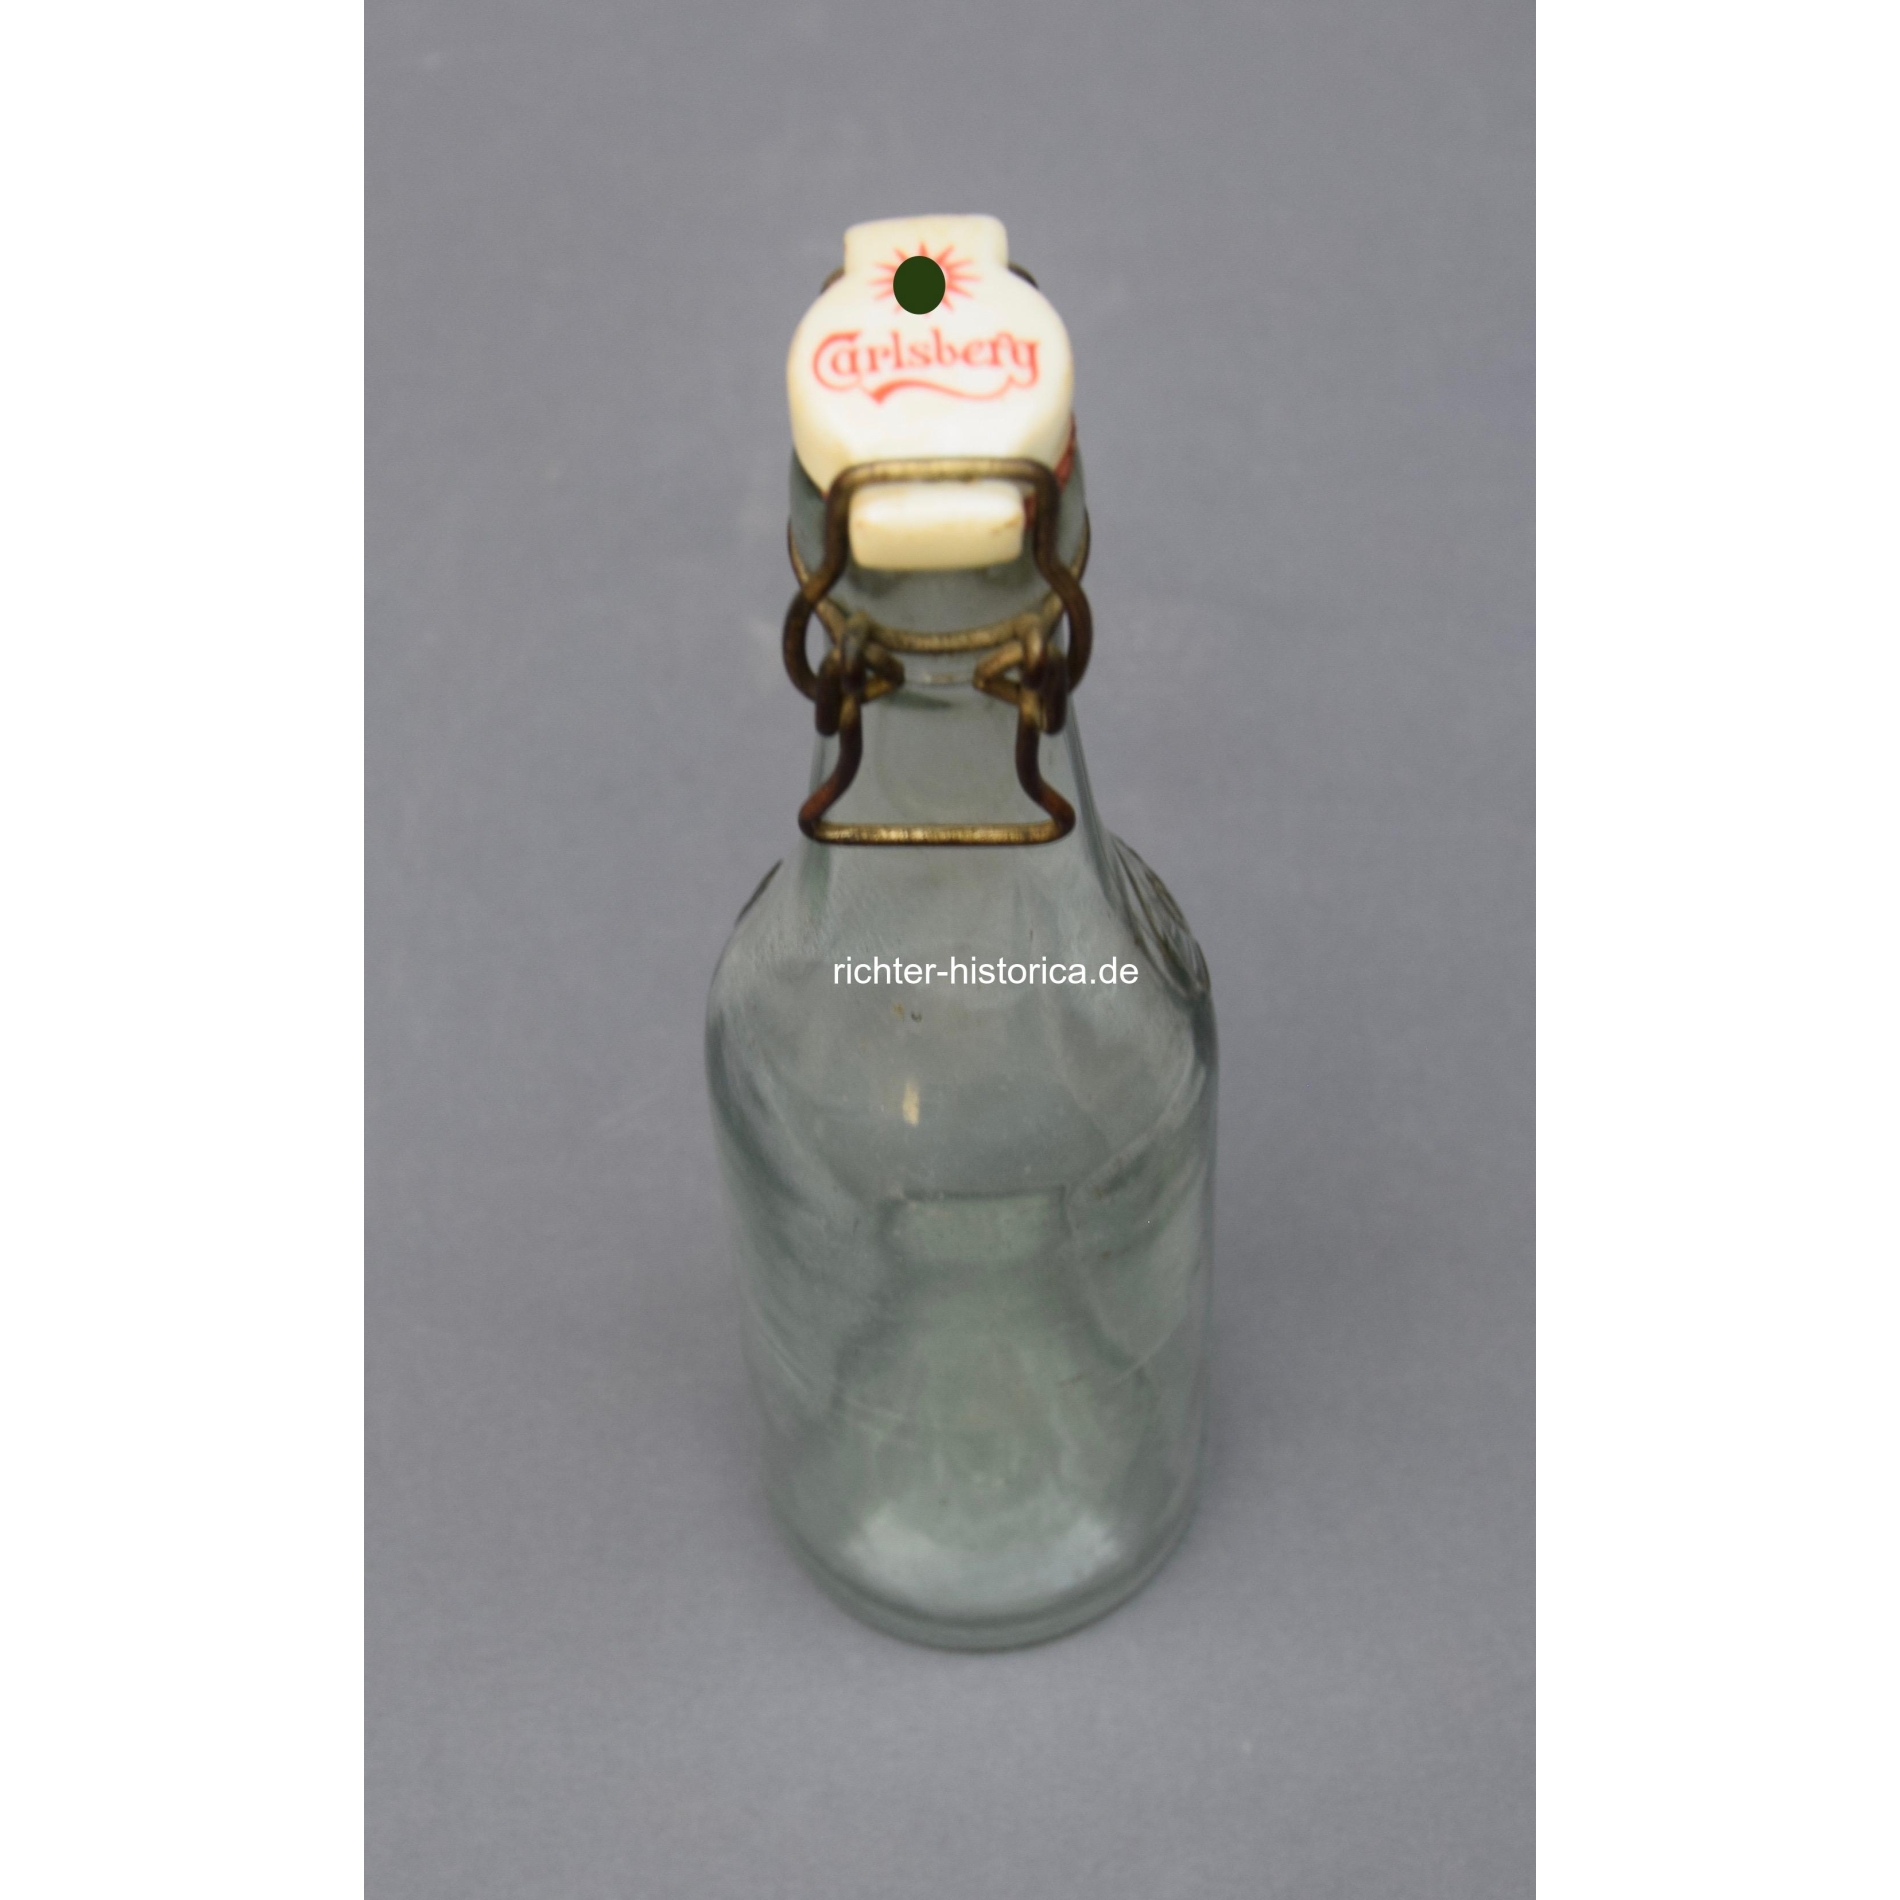 2.Weltkrieg Glasflasche "Carlsberg" mit HK Sonnenrad